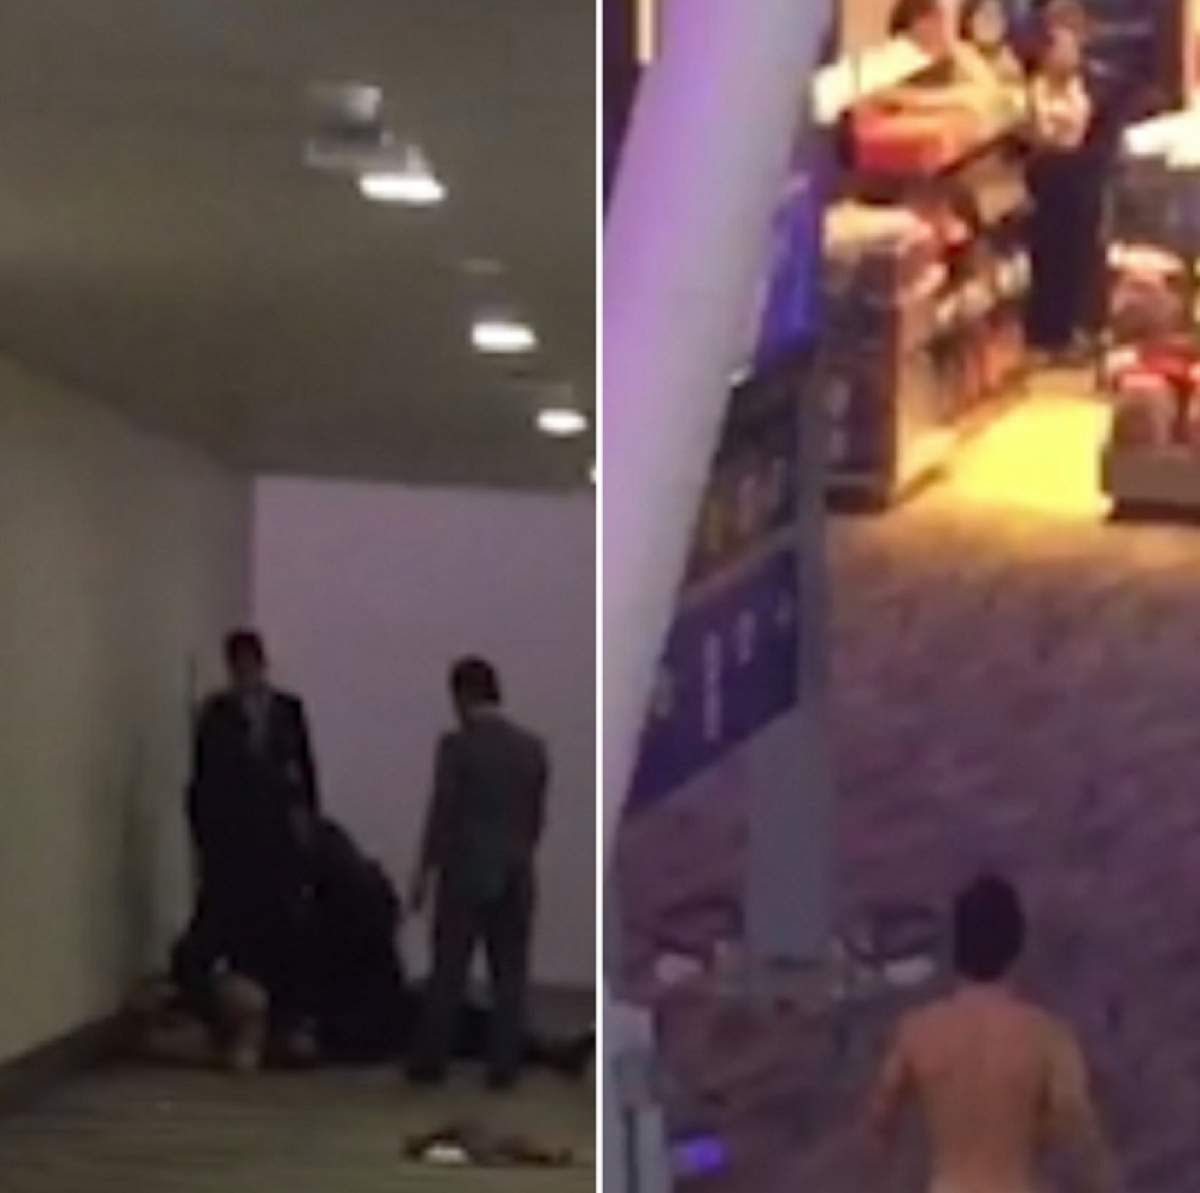 VIDEO / Un bărbat a mers la aeroport, s-a dezbrăcat și a șocat sute de oameni: "A fost cel mai dezgustător lucru"